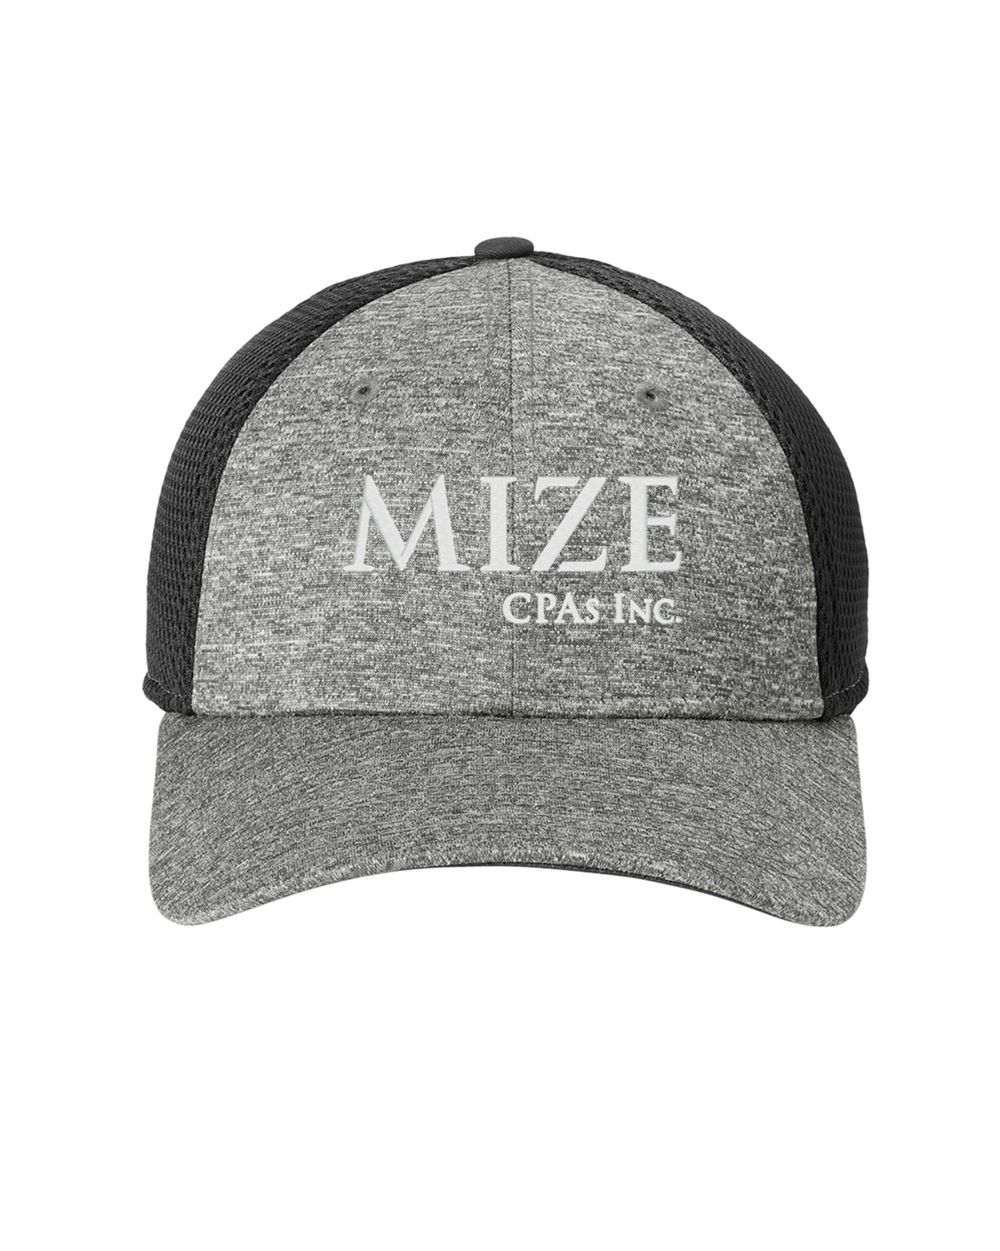 Mize CPAs Inc. - New Era Shadow Stretch Mesh Cap - NE702